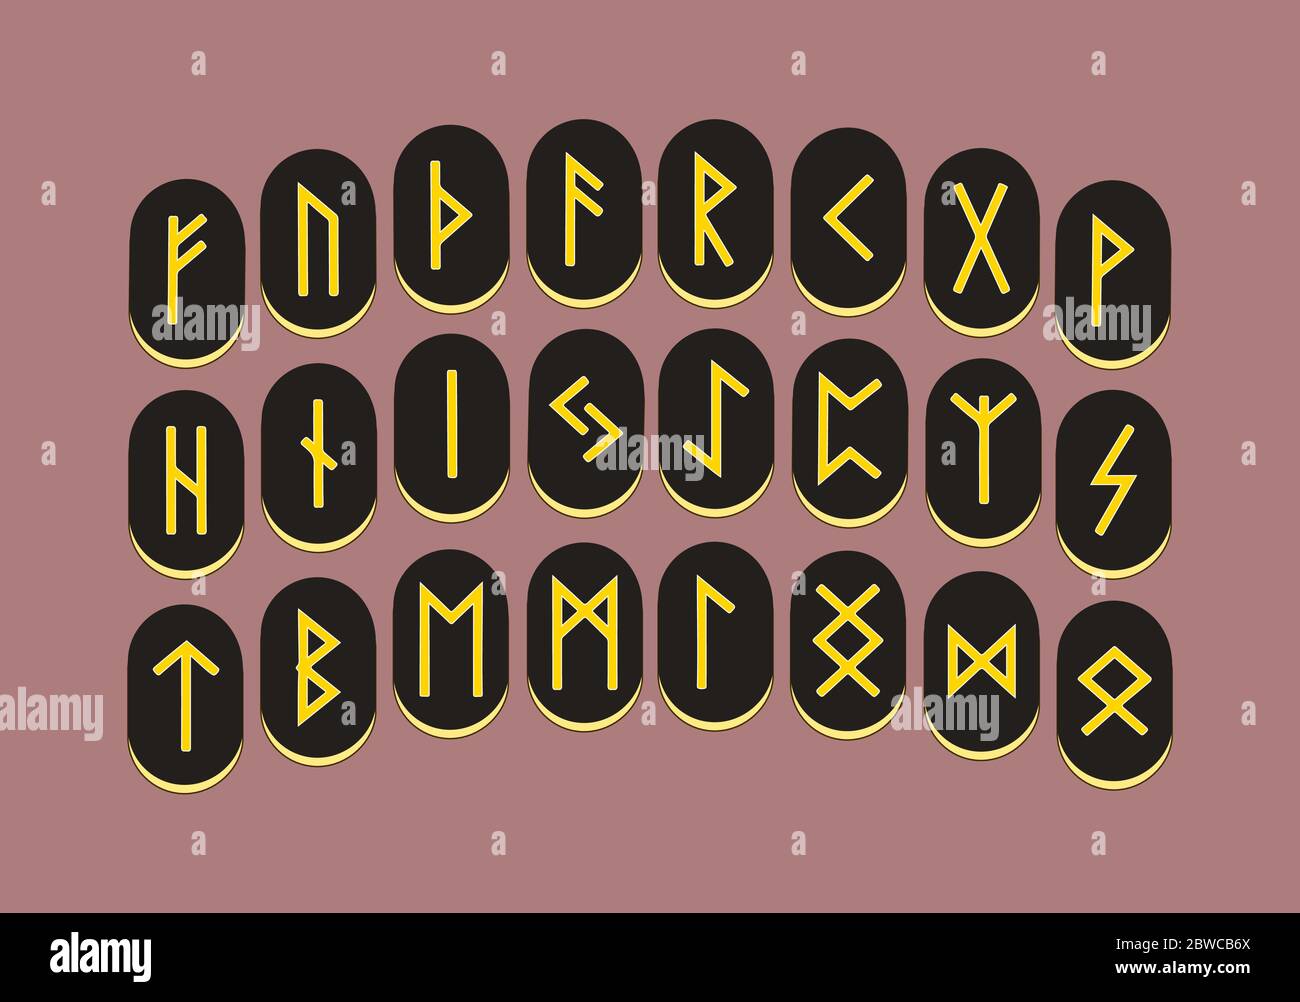 Ensemble de vieux runes norse, alphabet runique, Futhark. Symboles occultes anciens dans un style plat.Vector Illustration de Vecteur